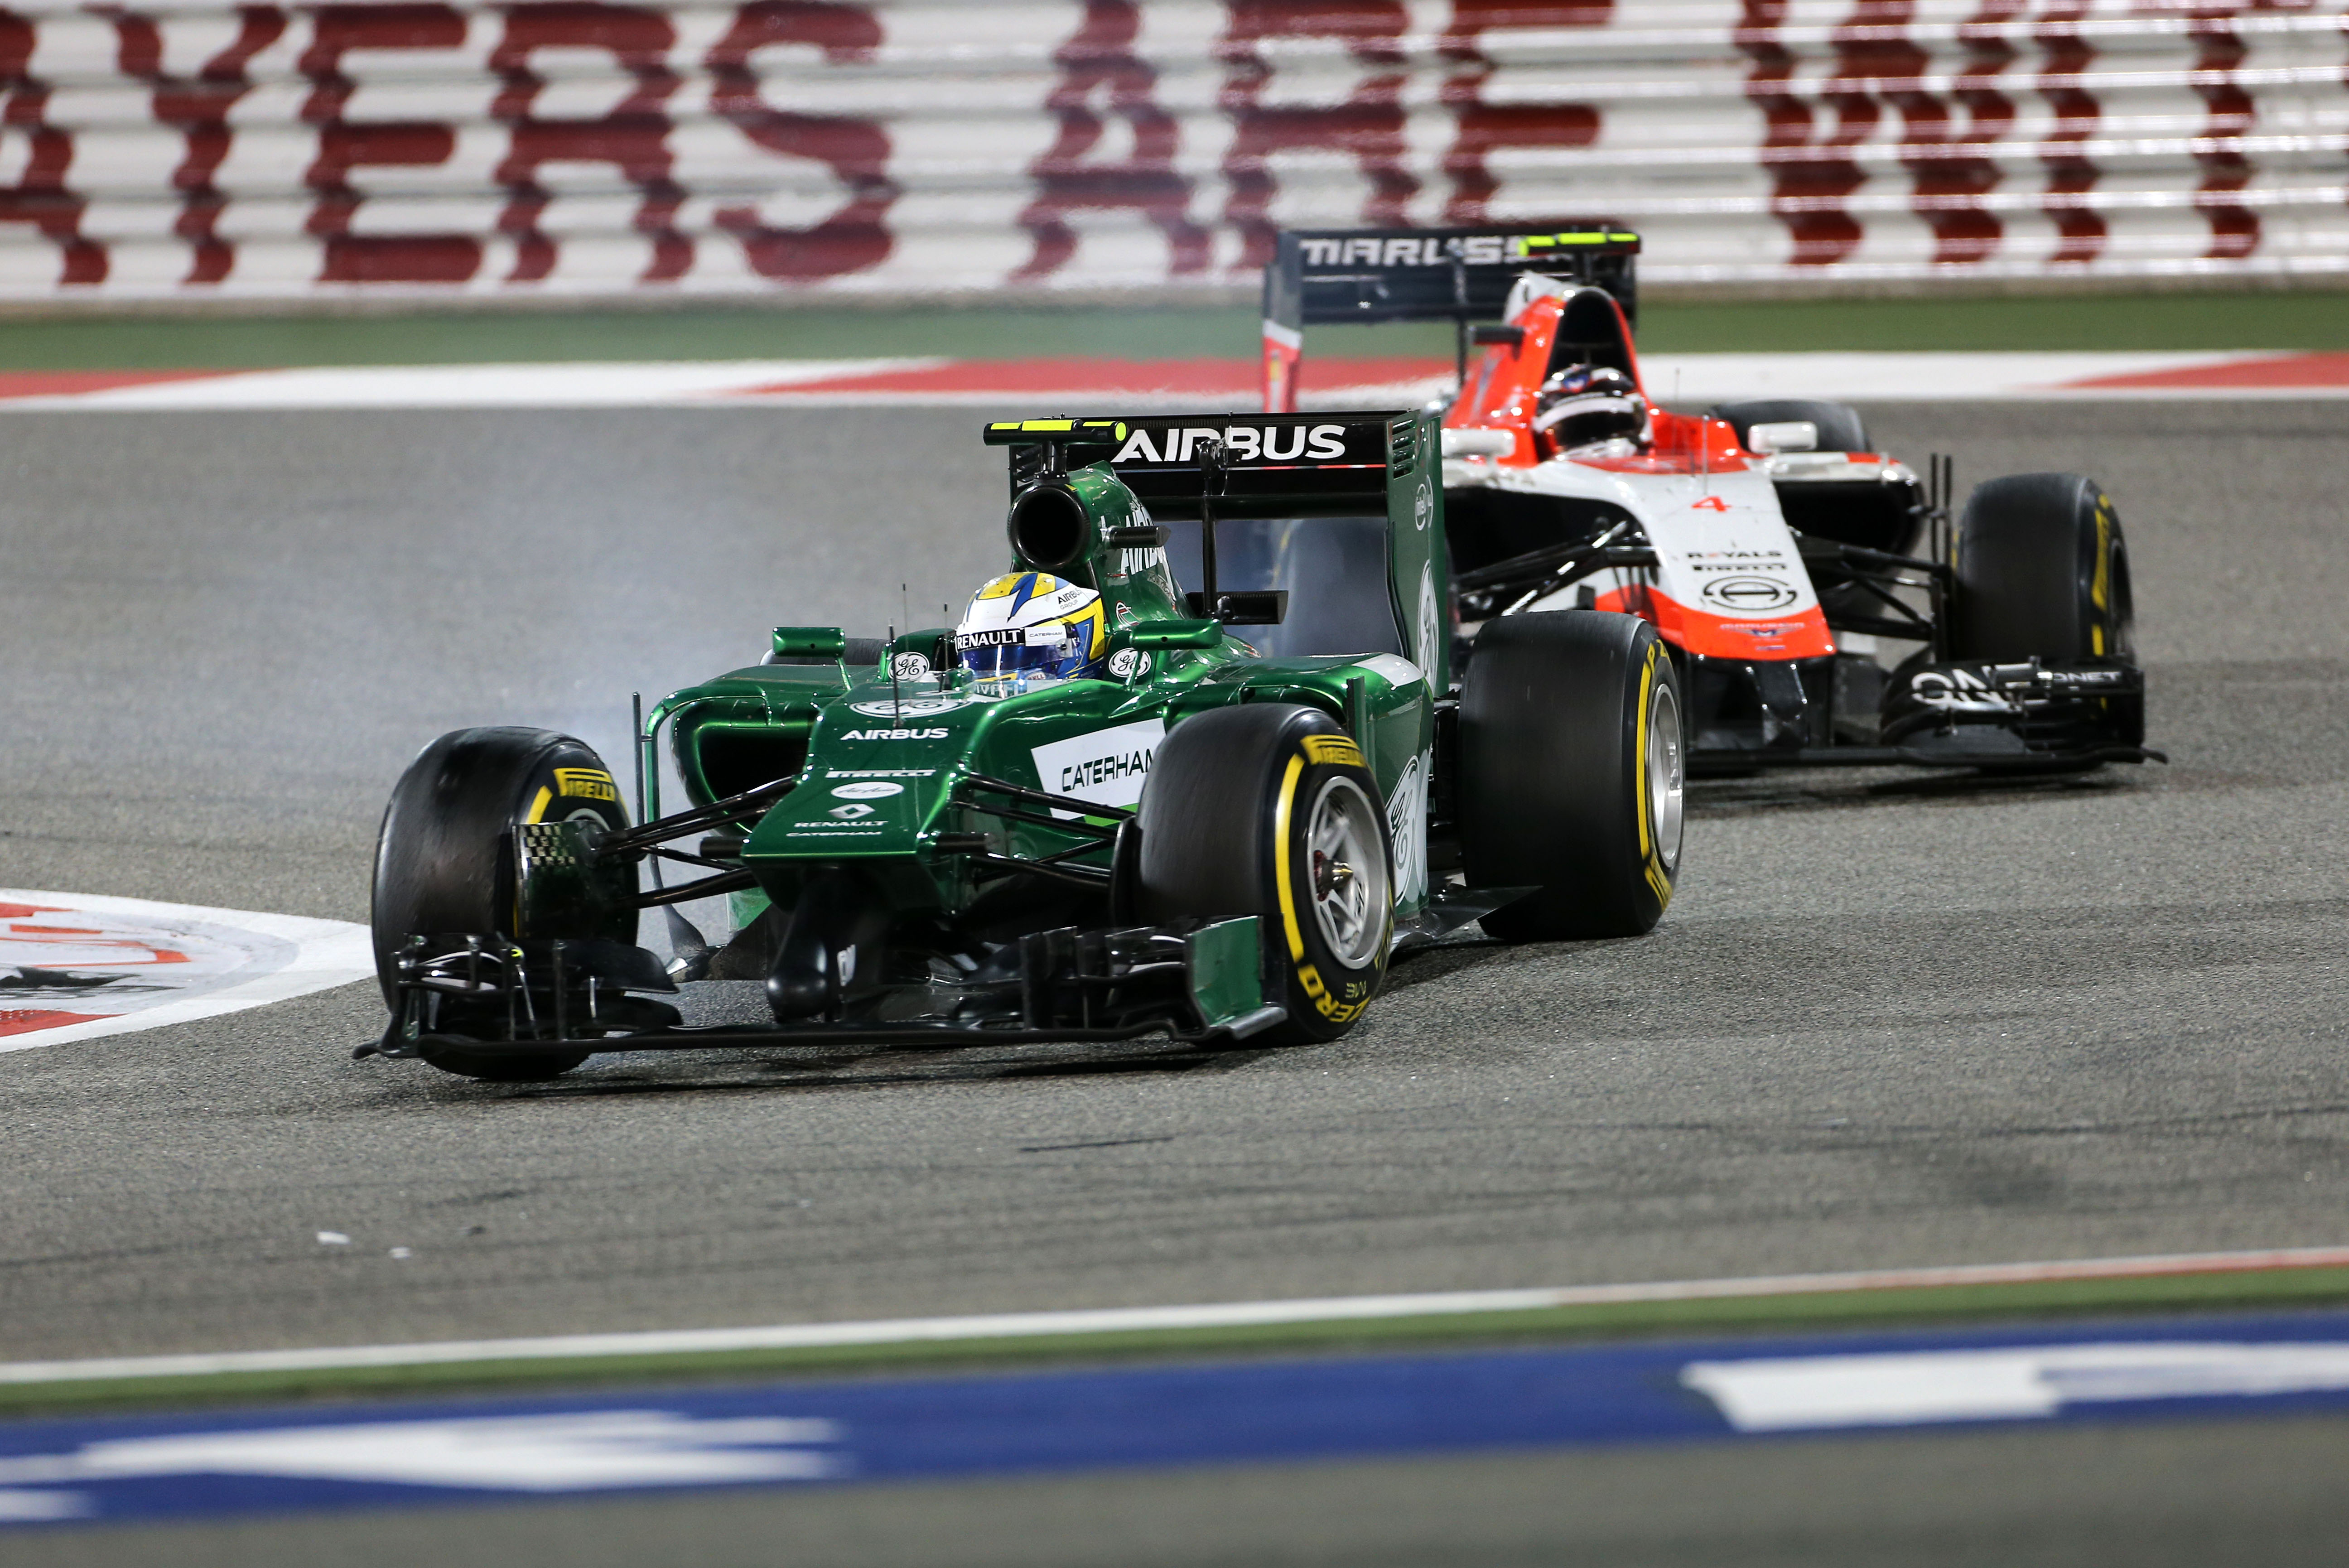 Spanje is volgende ronde van tweestrijd Marussia en Caterham